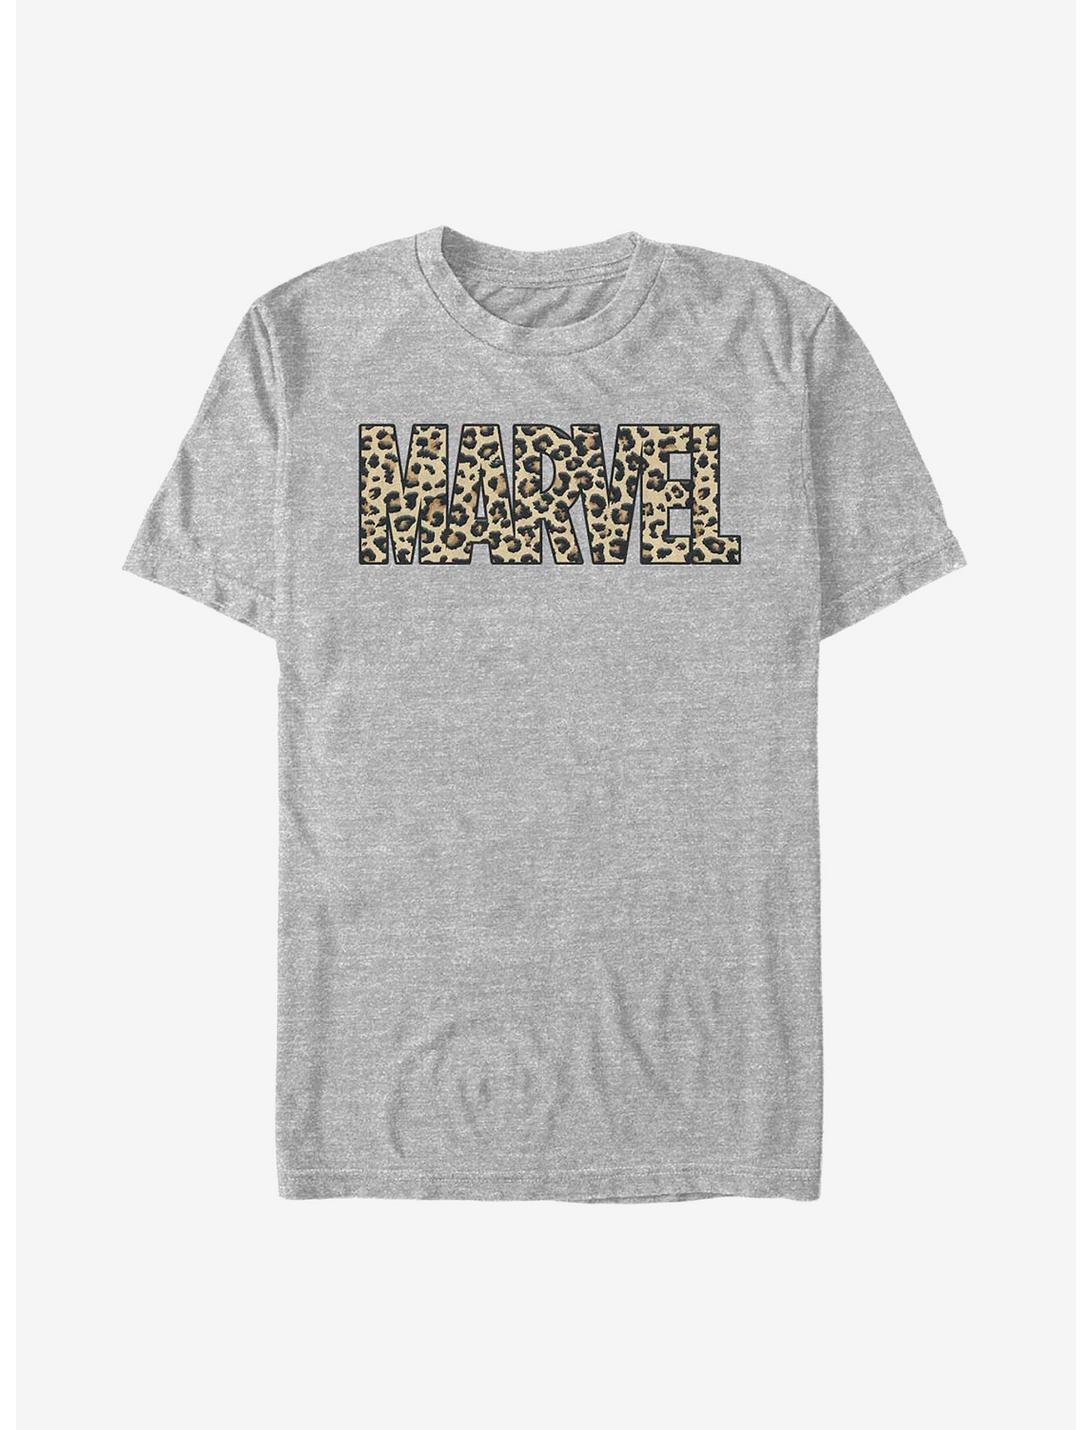 Marvel Leopard T-Shirt, ATH HTR, hi-res